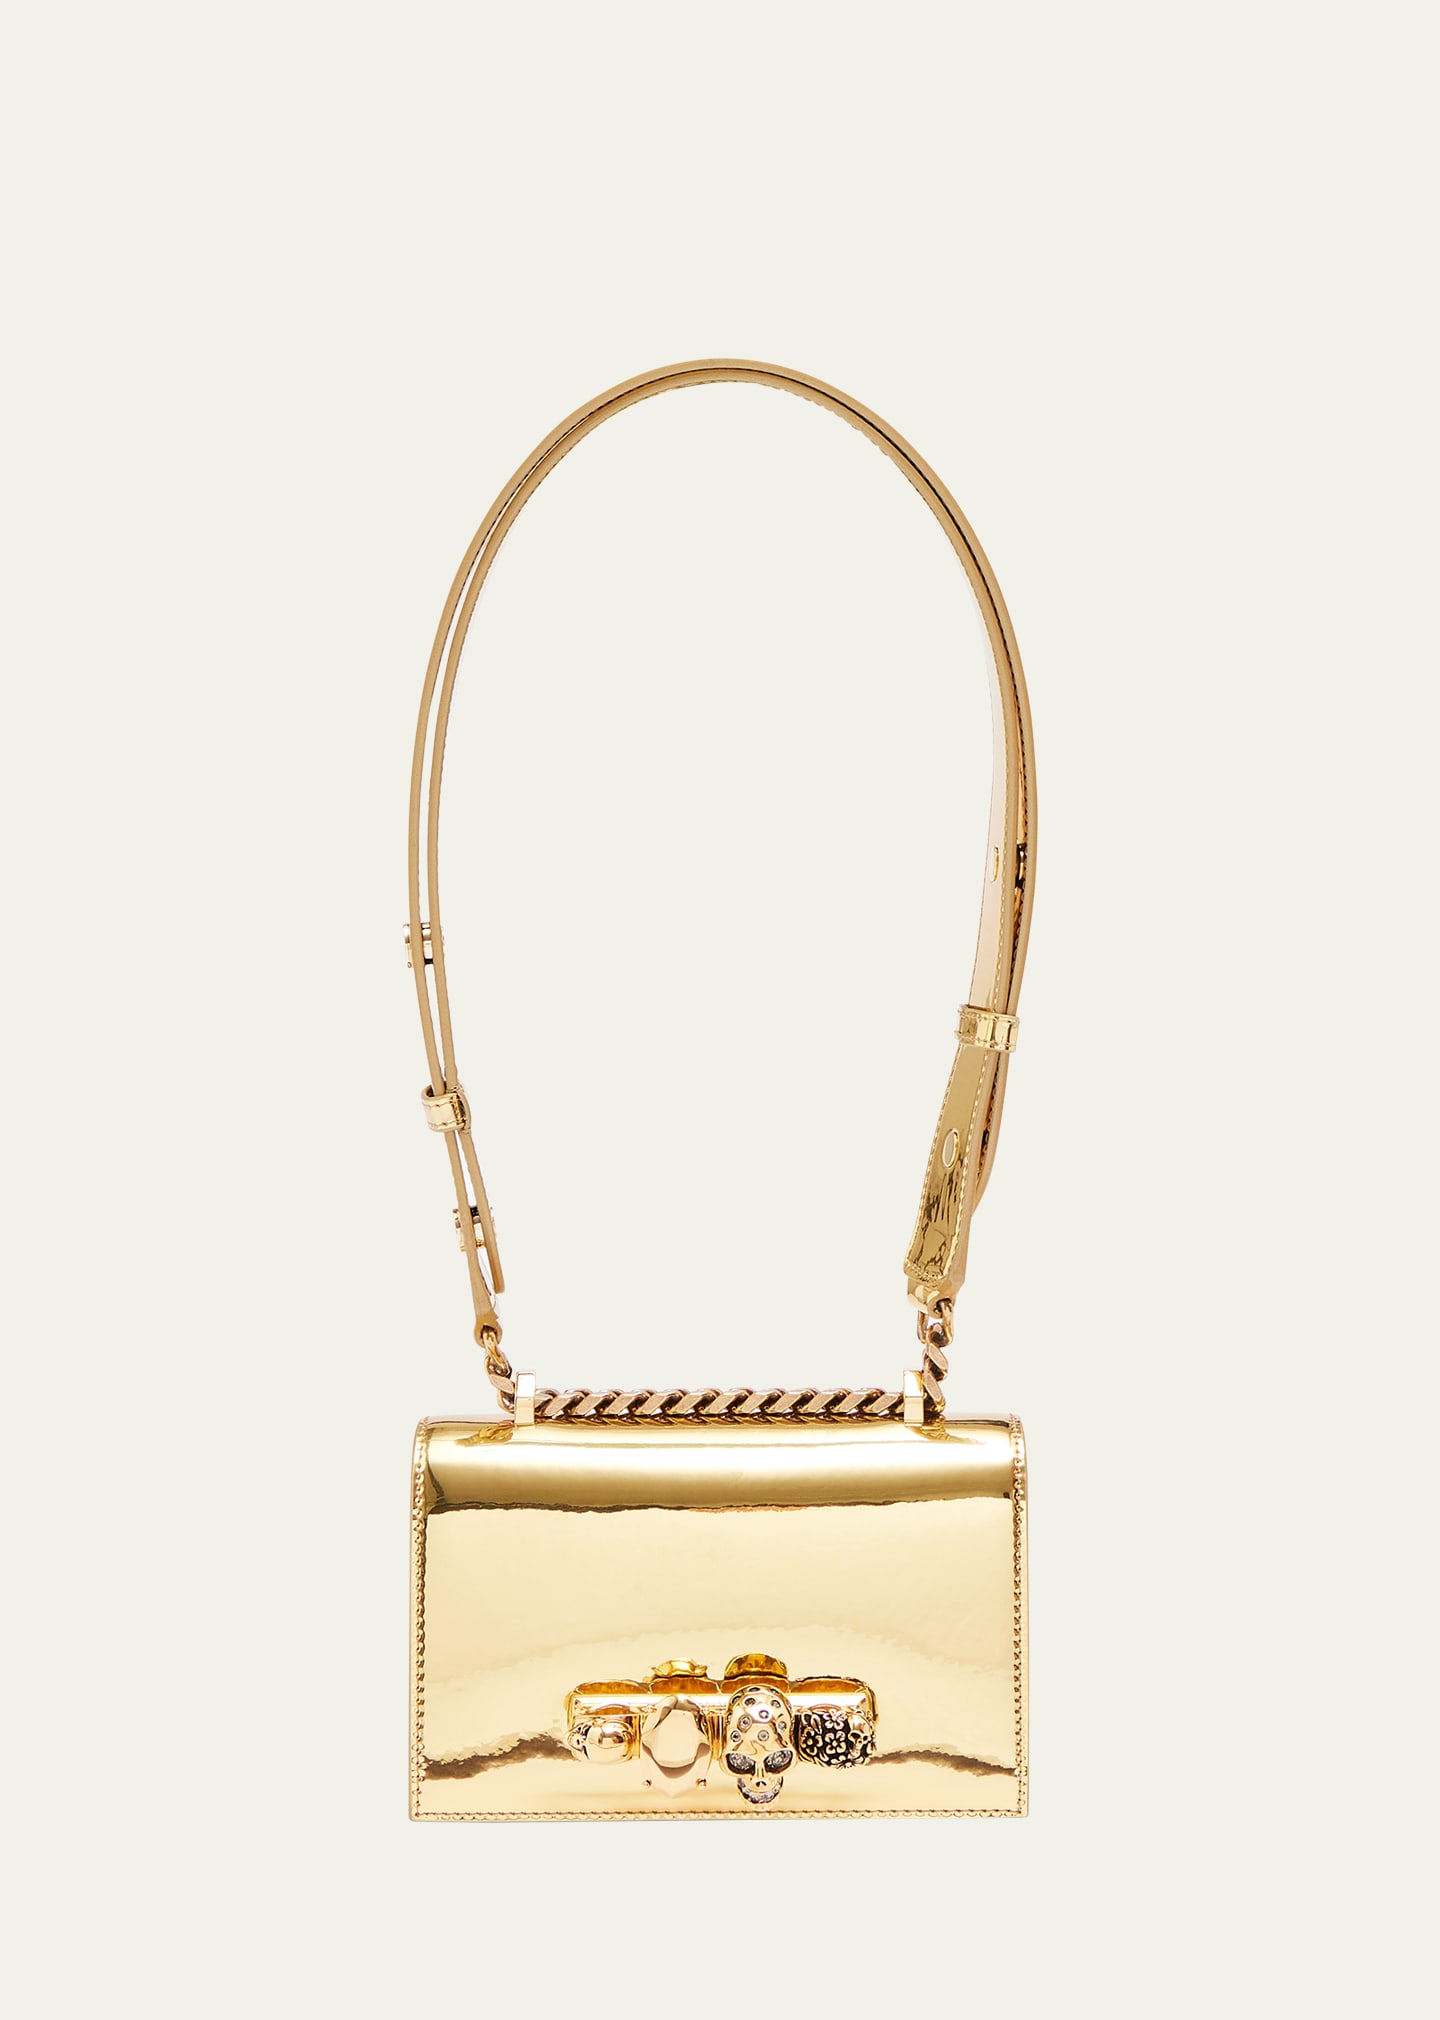 Designer Handbags : Tote & Crossbody Bags at Bergdorf Goodman